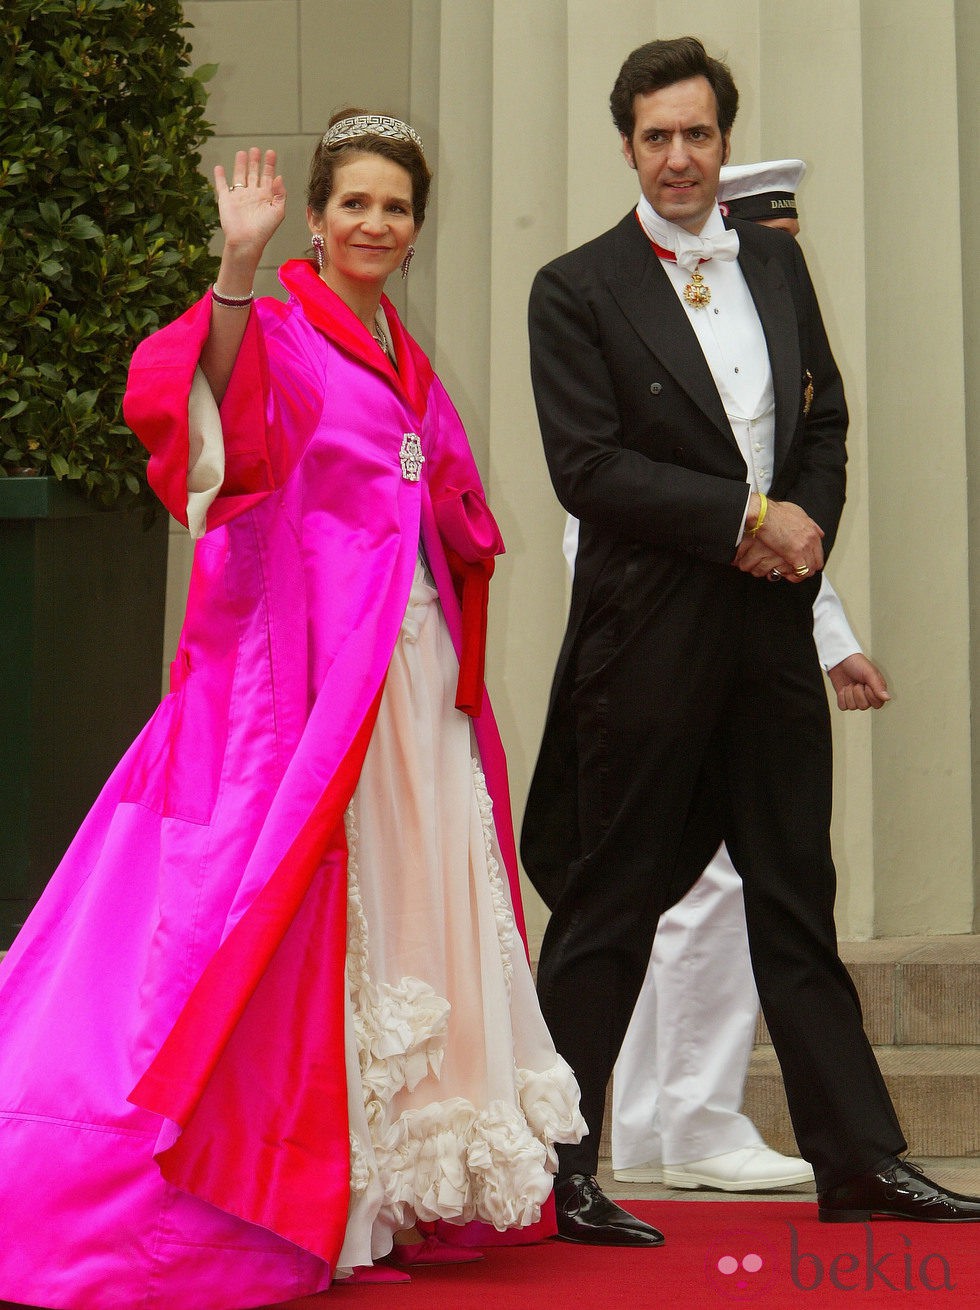 La Infanta Elena con vestido largo en blanco roto y abrigo en rosa capote